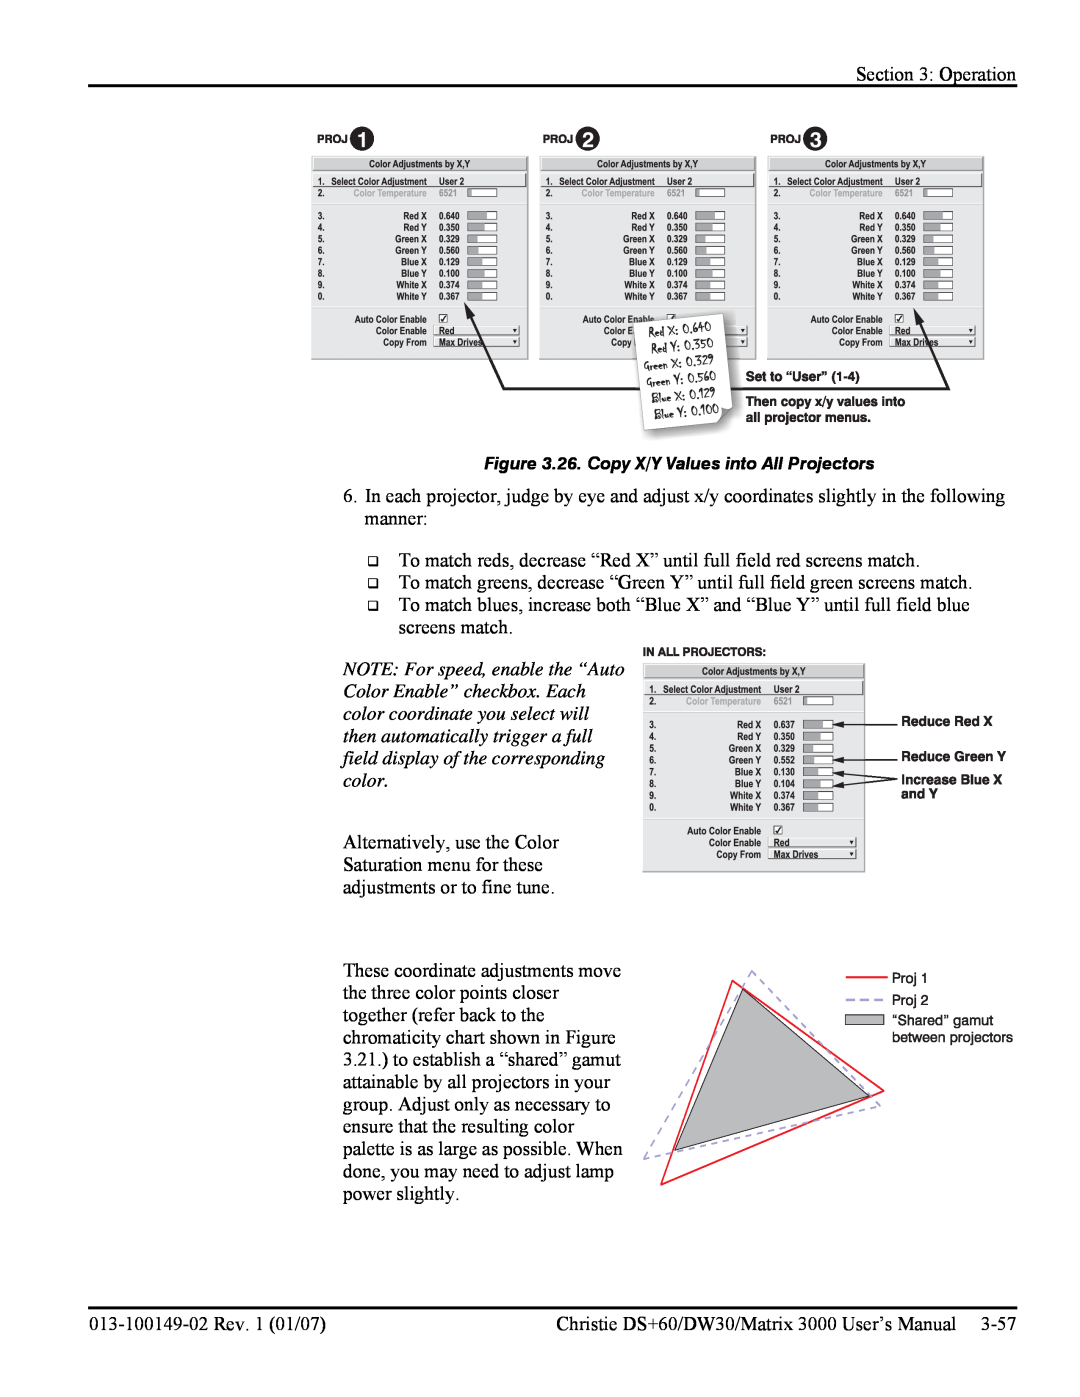 Texas Instruments MATRIX 3000, DW30 user manual 26. Copy X/Y Values into All Projectors 